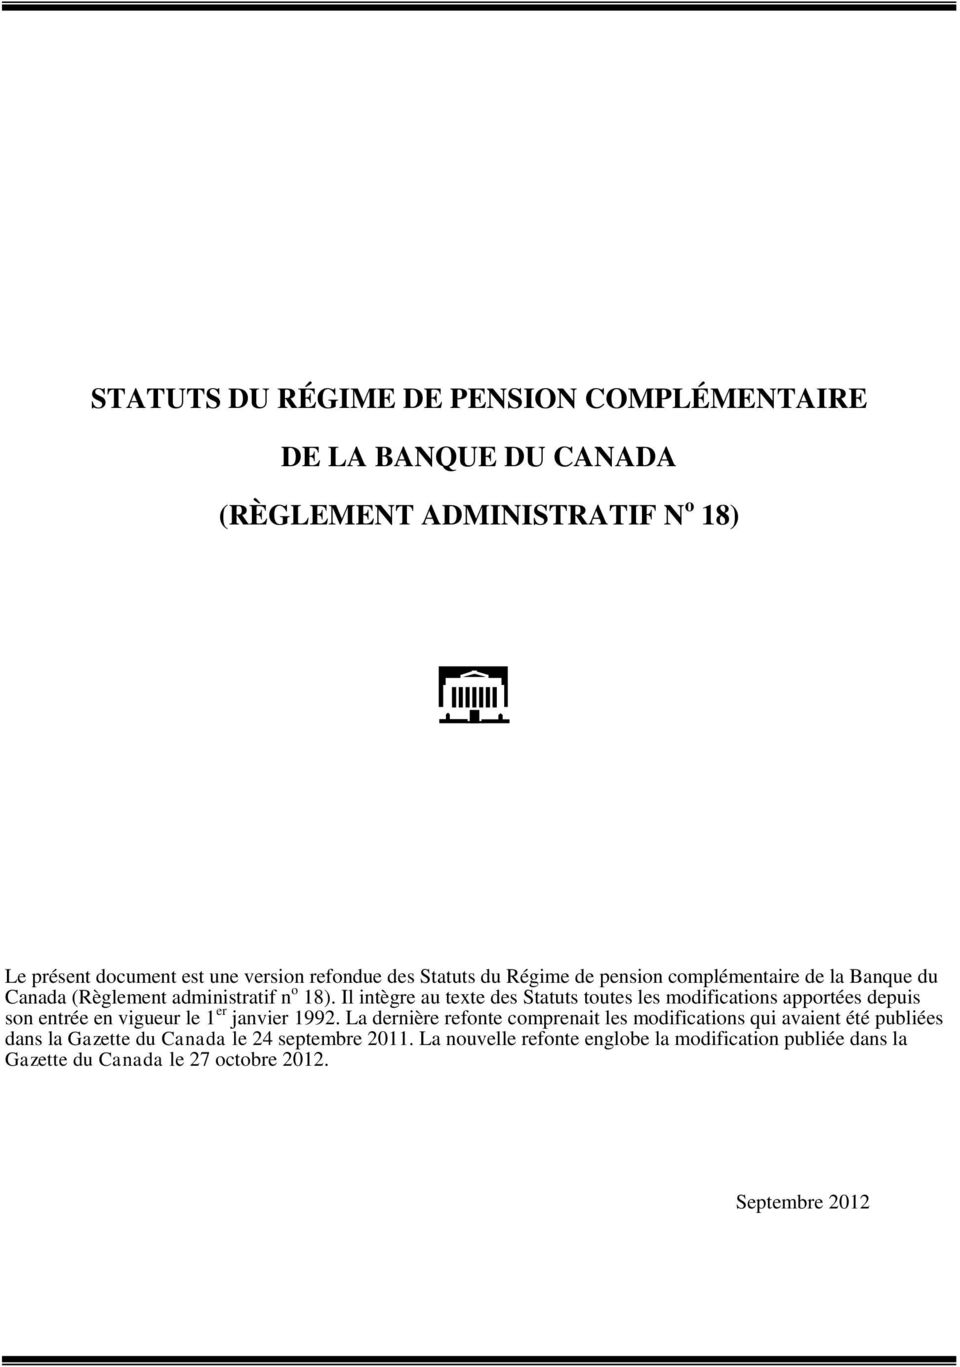 Il intègre au texte des Statuts toutes les modifications apportées depuis son entrée en vigueur le 1 er janvier 1992.